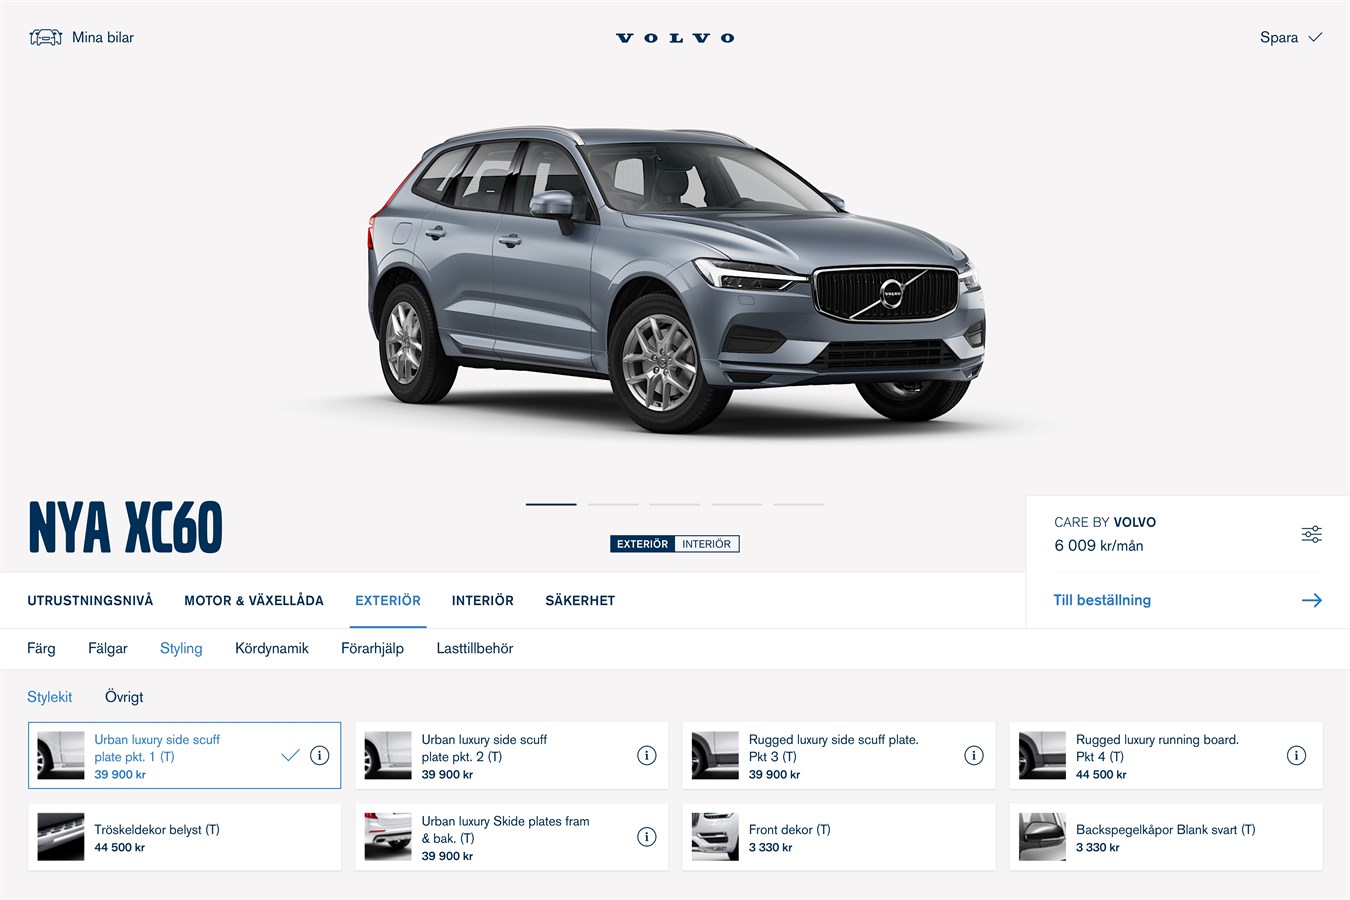 Köp din Volvobil hemma i soffan - Volvo Car Sverige lanserar digital bilförsäljning